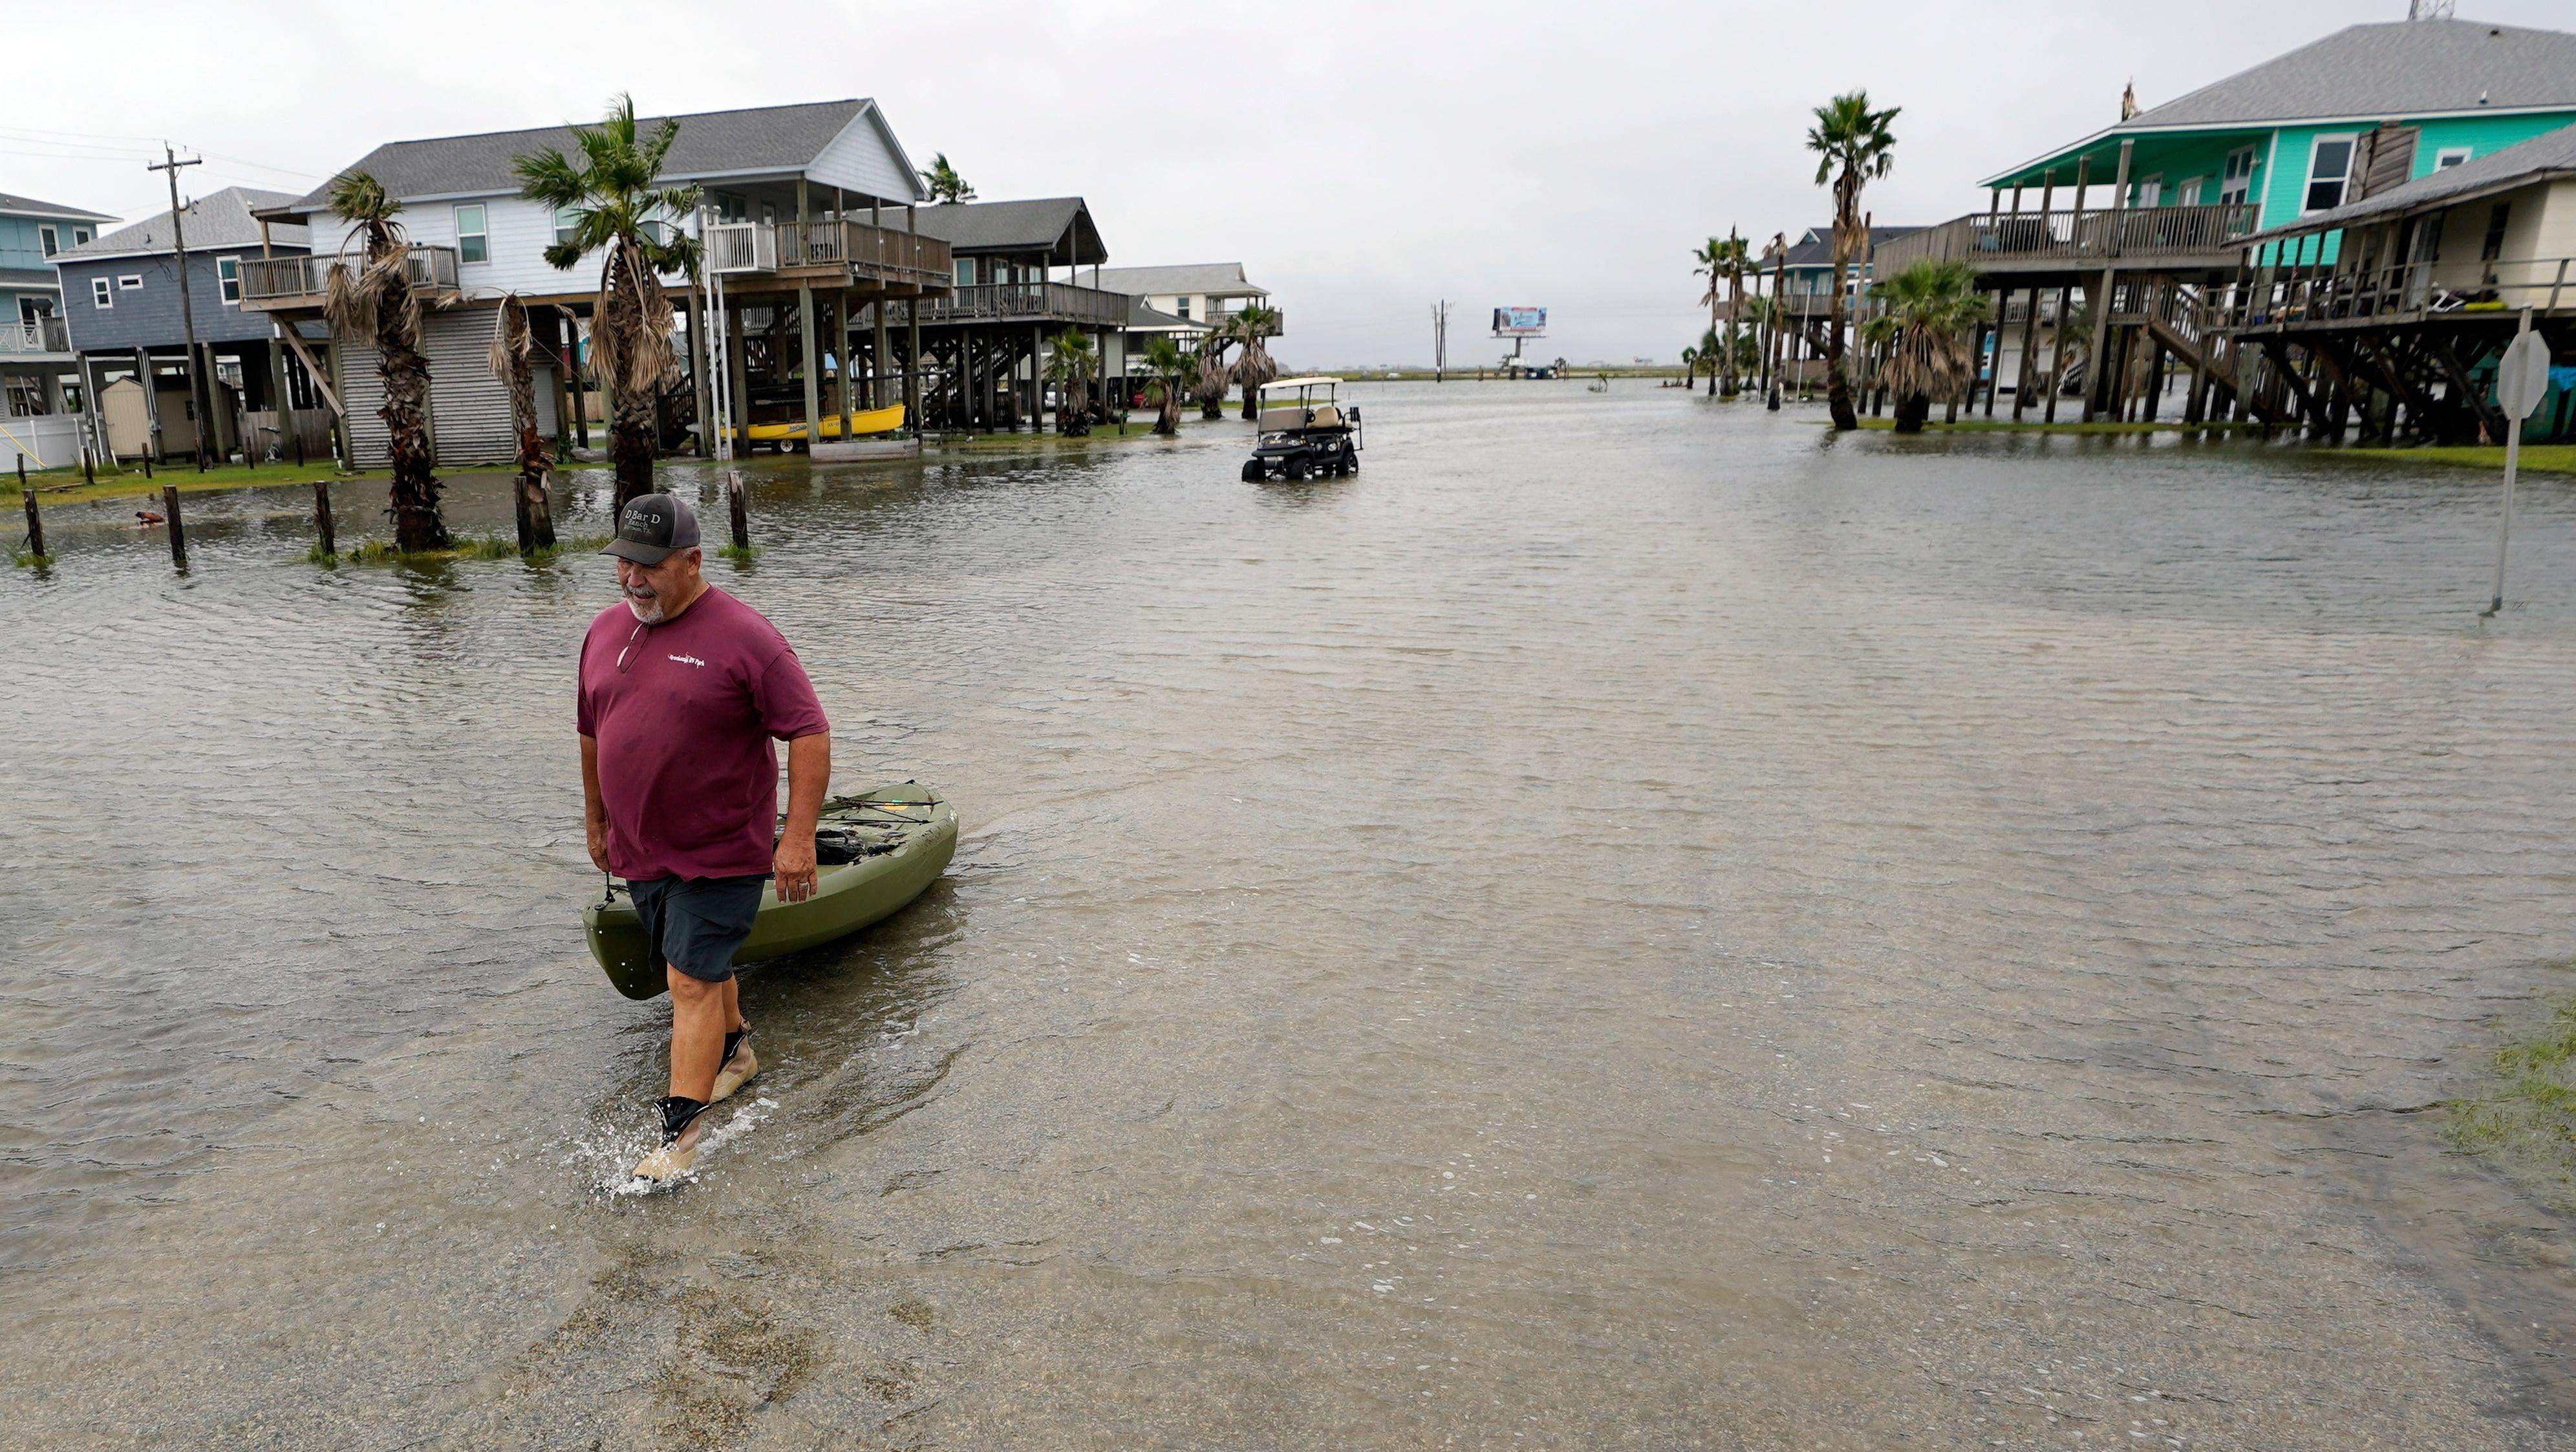 بوبا فيرجسون تسحب قاربًا عبر شارع غمرته المياه في أعقاب إعصار نيكولاس في سبتمبر.  14 ، 2021 ، في سان لويس باس ، تكساس.